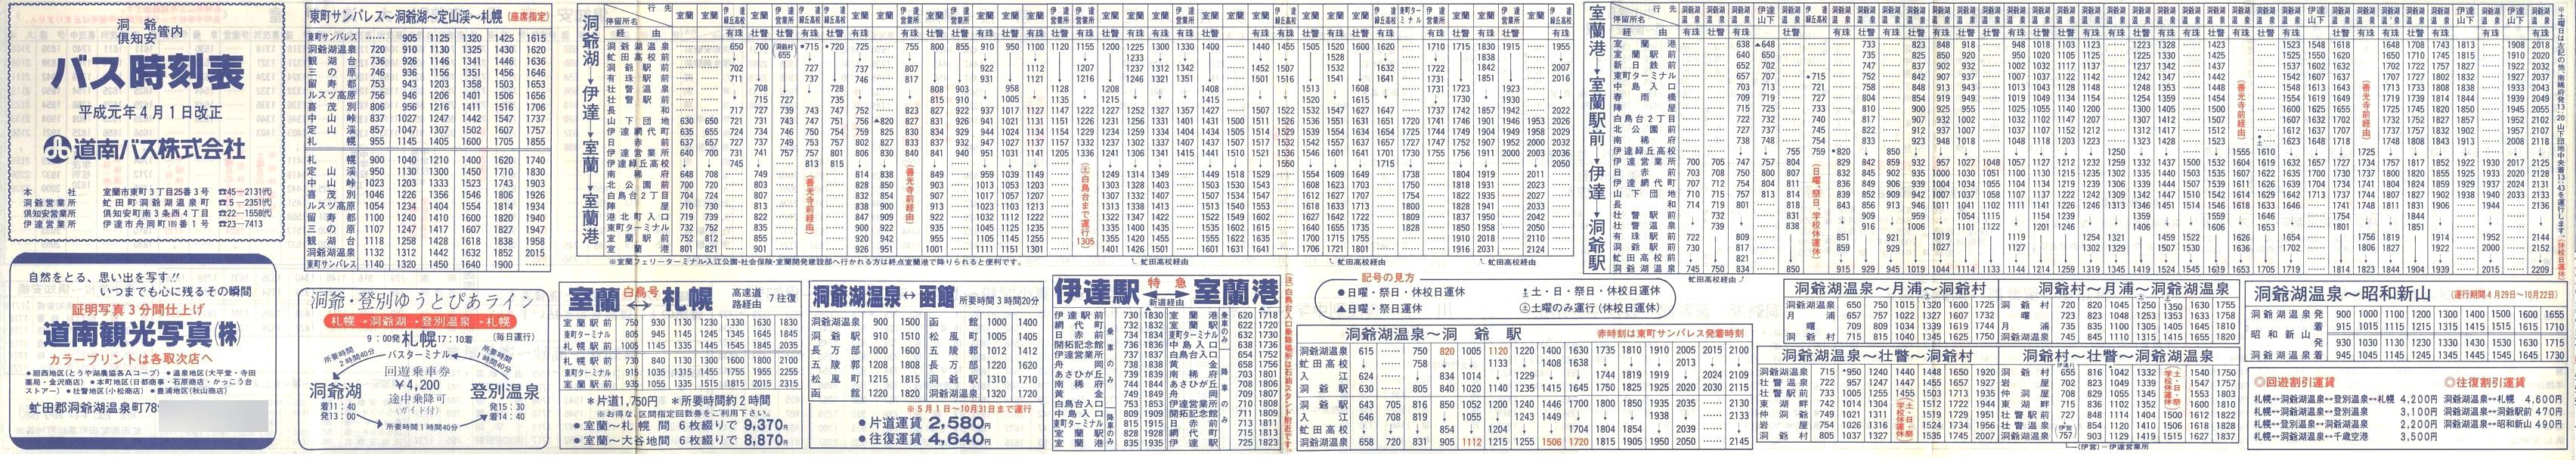 1989-04-01改正_道南バス_洞爺・倶知安管内時刻表表面